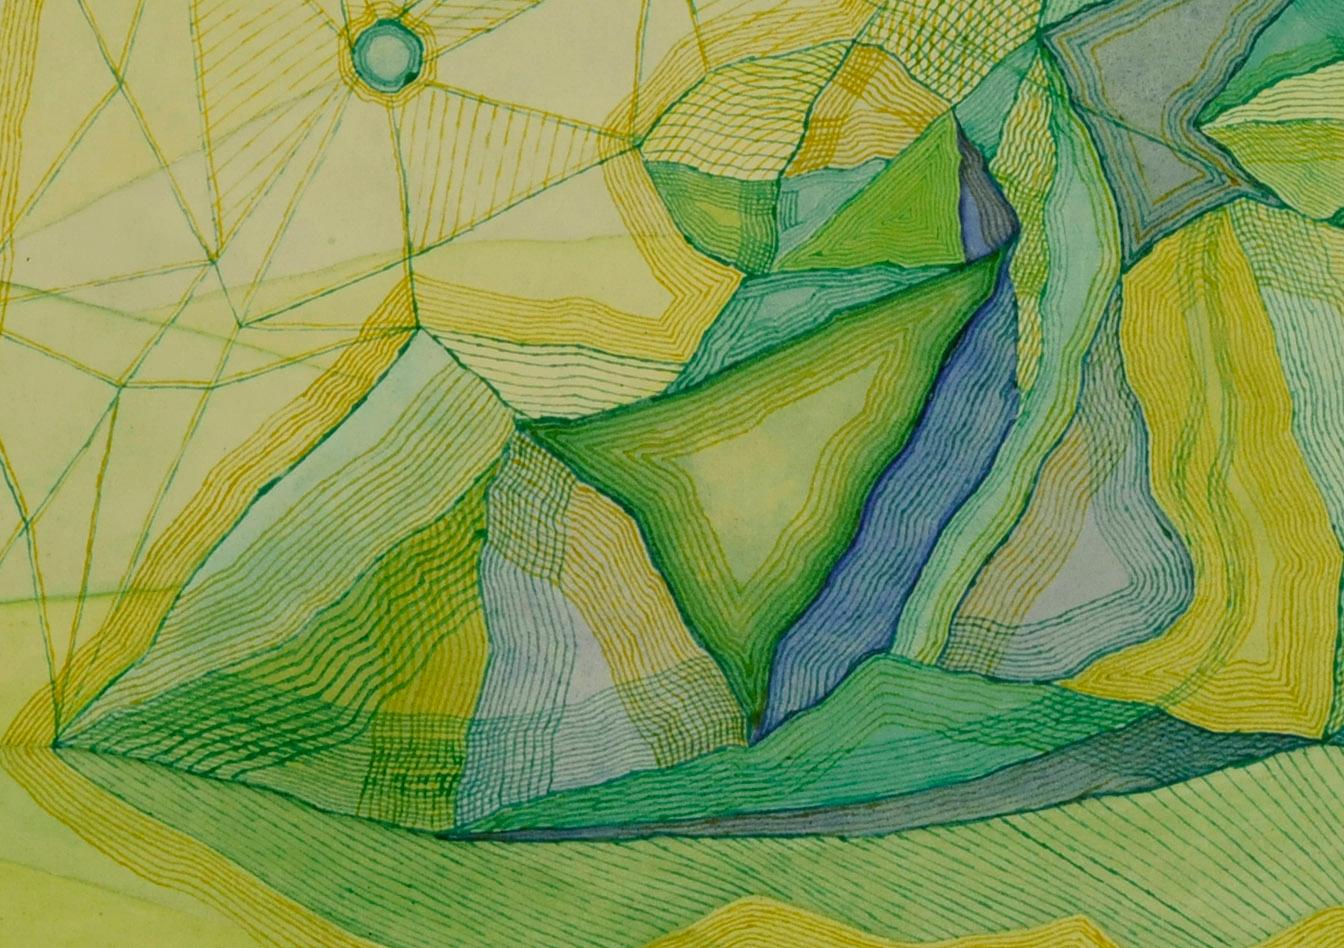 Cobwebs und Felsen (Grün), Abstract Drawing, von Benjamin G. Benno